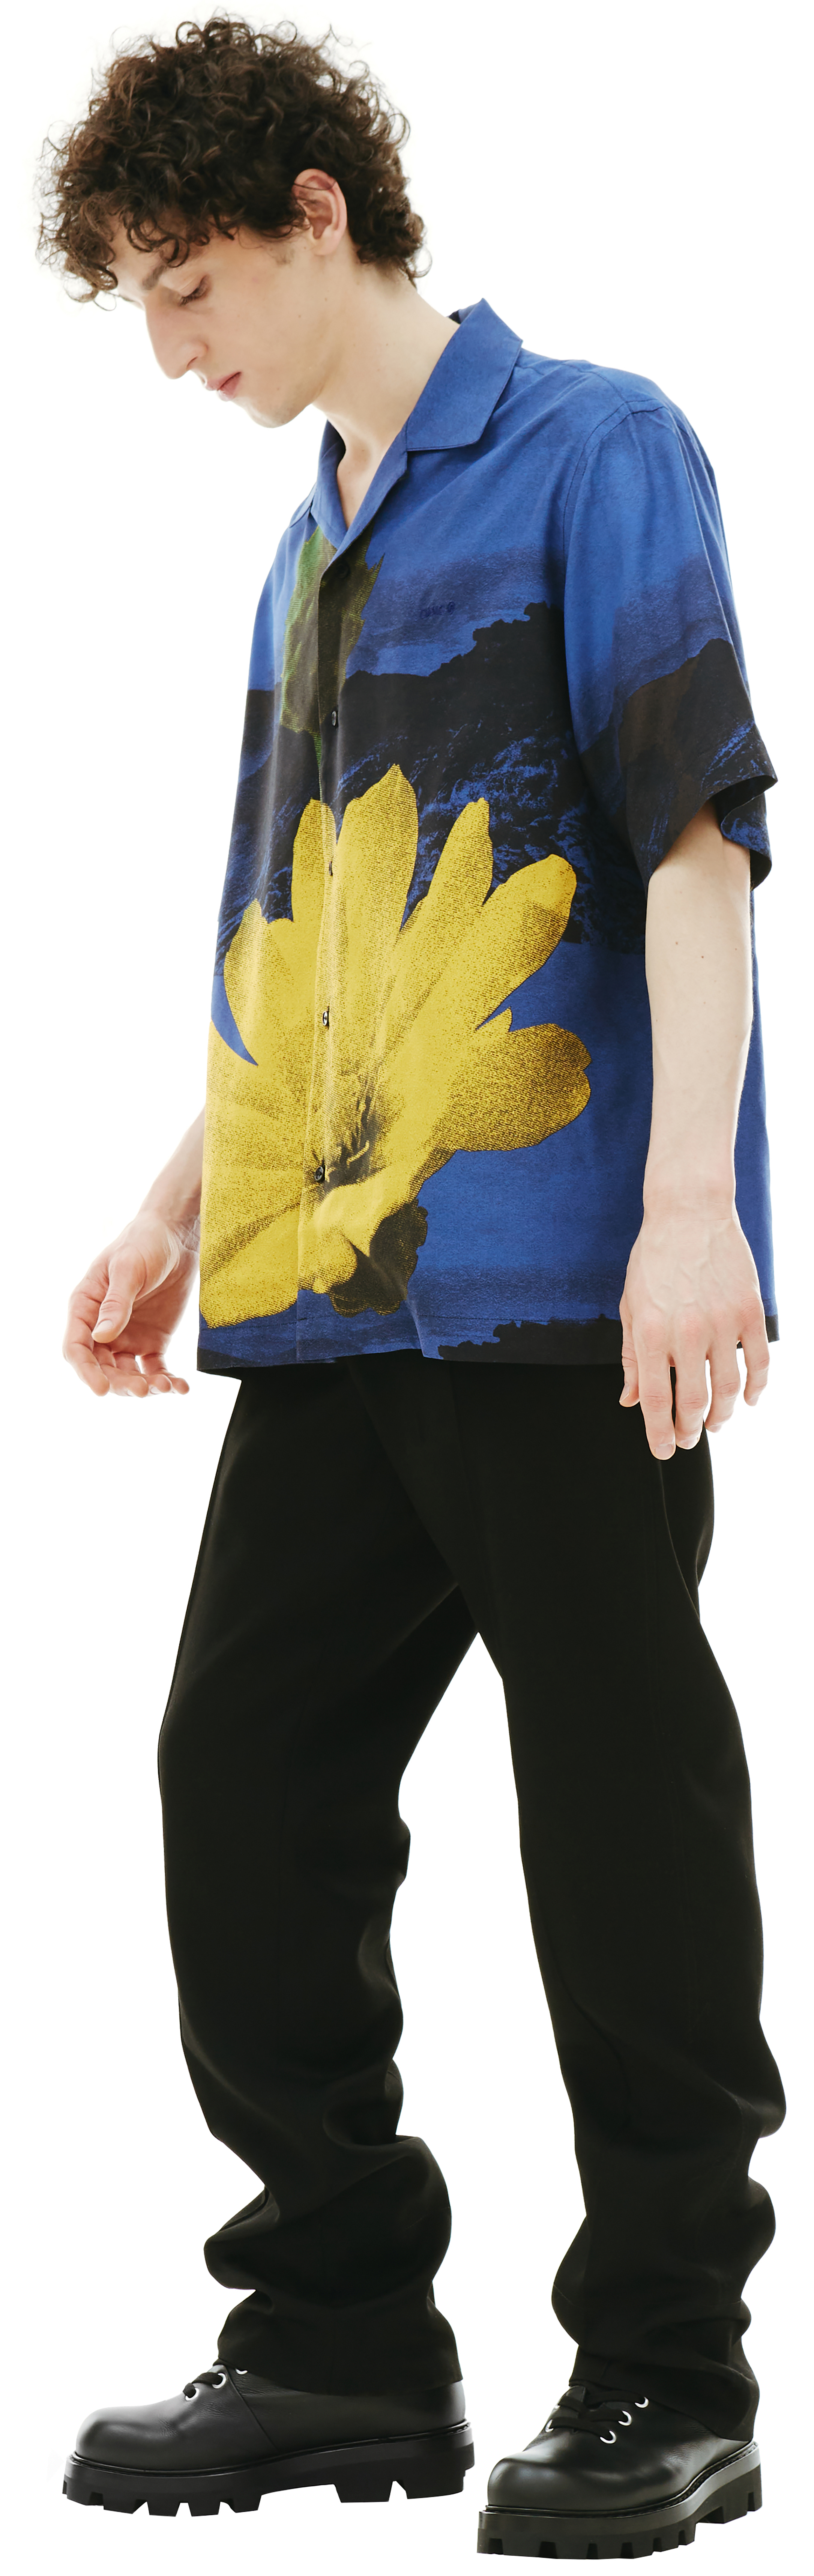 OAMC Kurt floral shirt